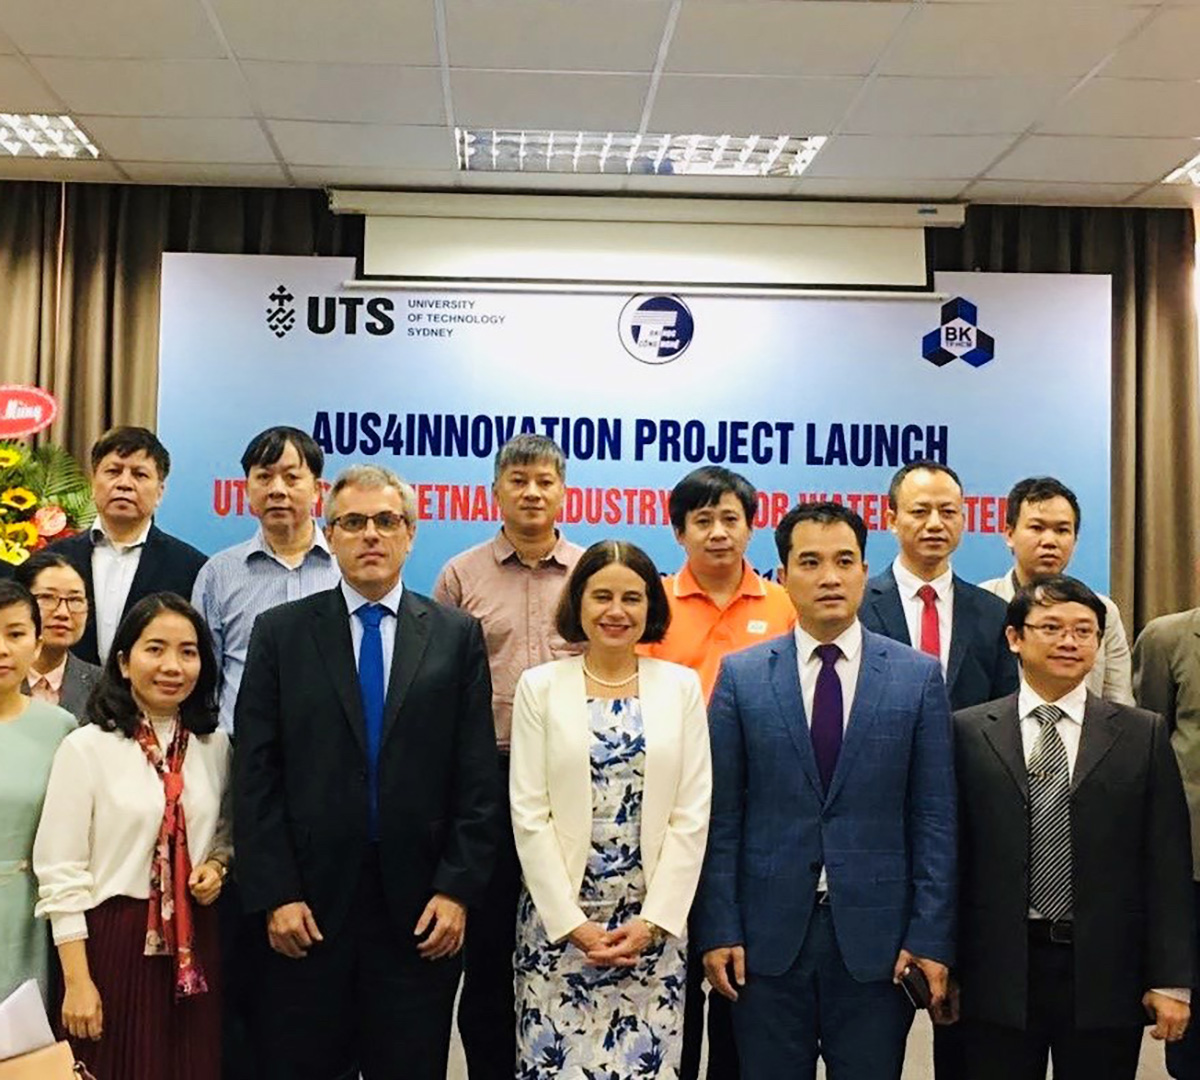 Mô hình UTS Rapido Việt Nam đã quy tụ các tổ chức nghiên cứu trên cả nước, đưa vào Việt Nam một phương pháp mới, giúp các nhà nghiên cứu địa phương thiết lập quan hệ đối tác hiệu quả hơn để giải quyết các thách thức và nắm bắt các cơ hội trong tương lai.